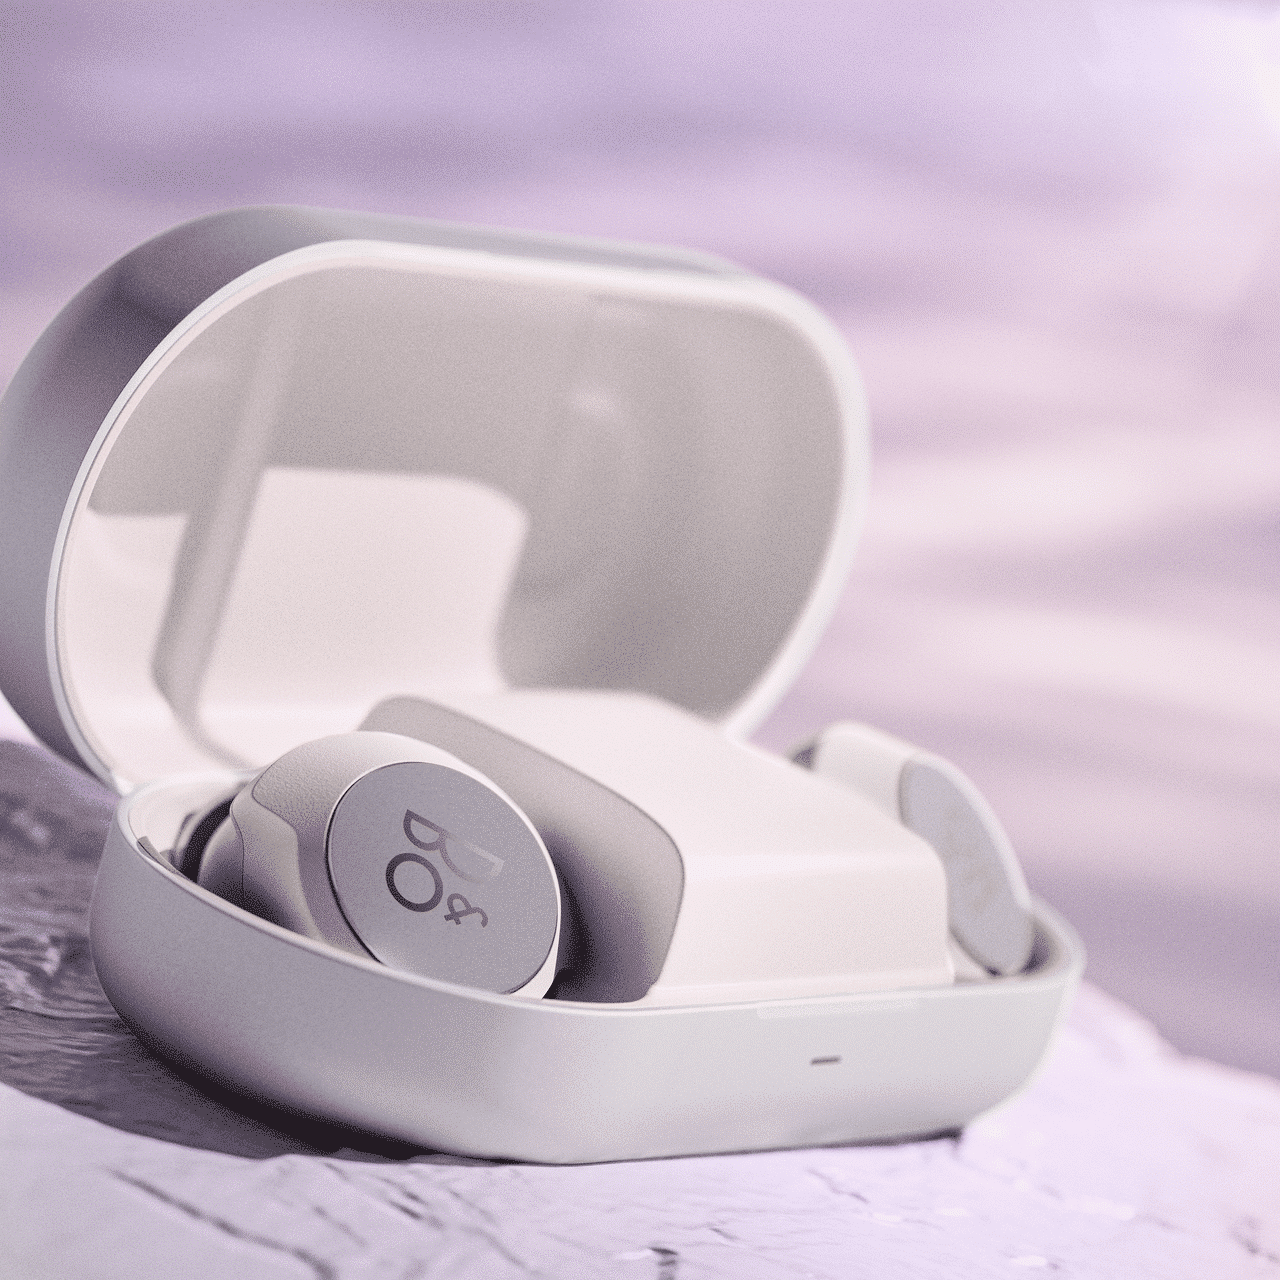 ิB&O หูฟัง Beoplay EQ Nordic Ice collection สีขาว ม่วง